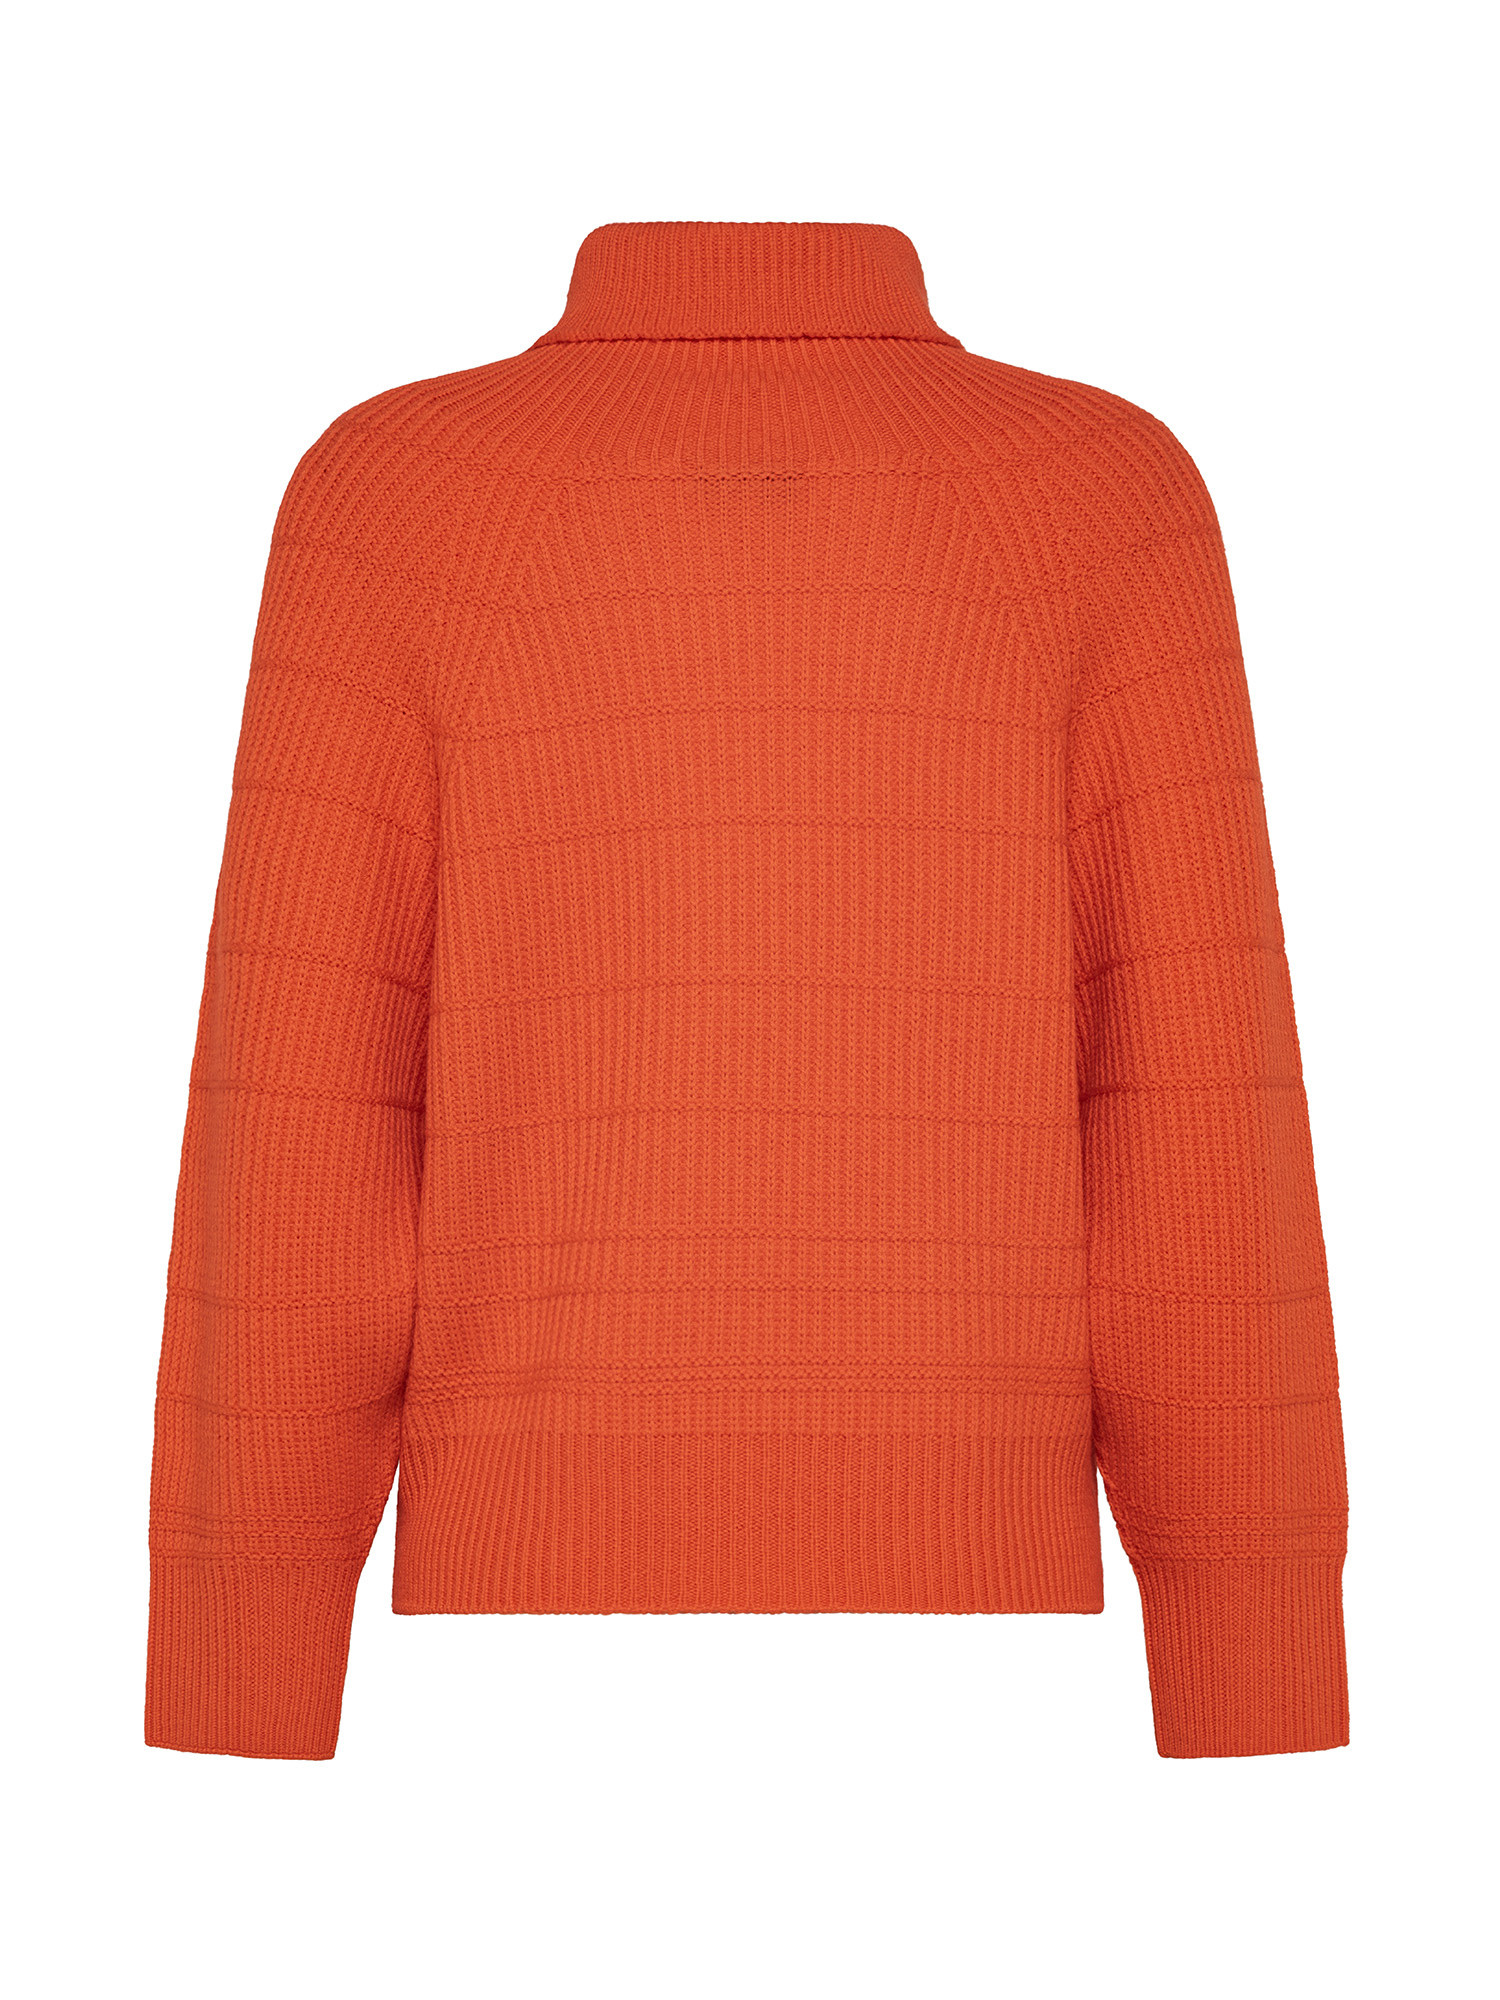 K Collection - Turtleneck pullover, Orange, large image number 1